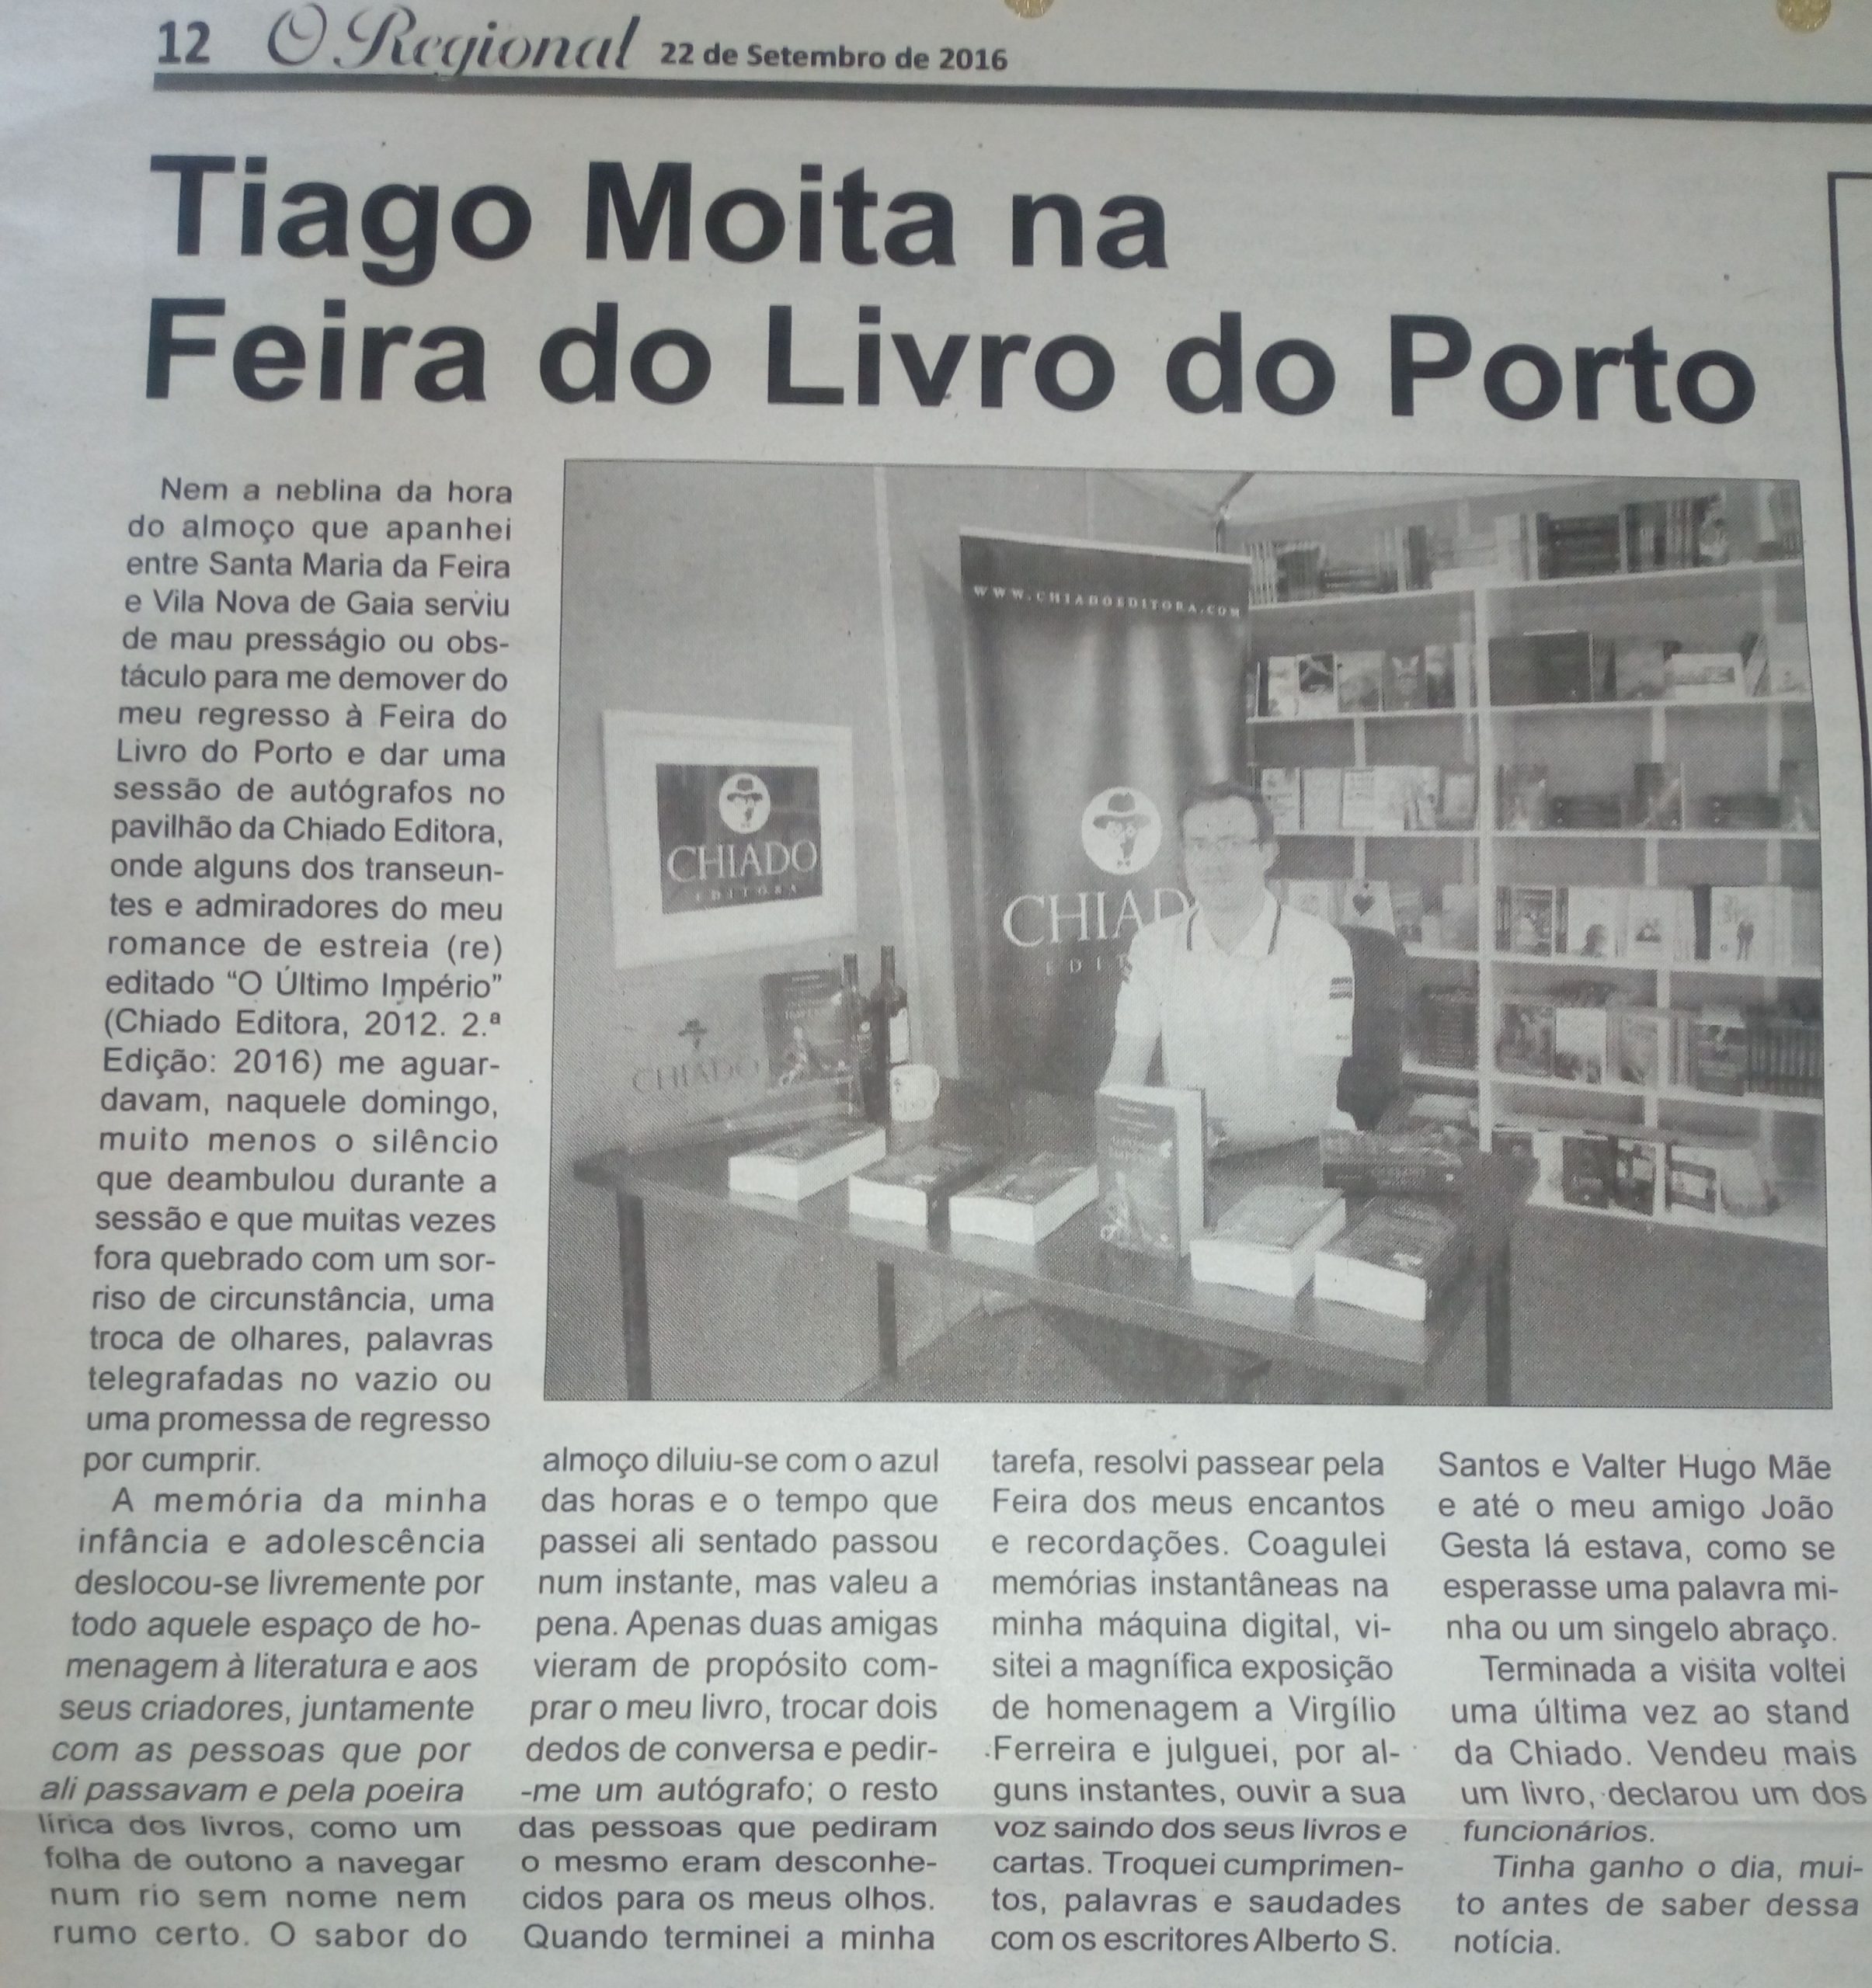 14. Tiago Moita na Feira do livro do Porto 2016 (22.09.2016)